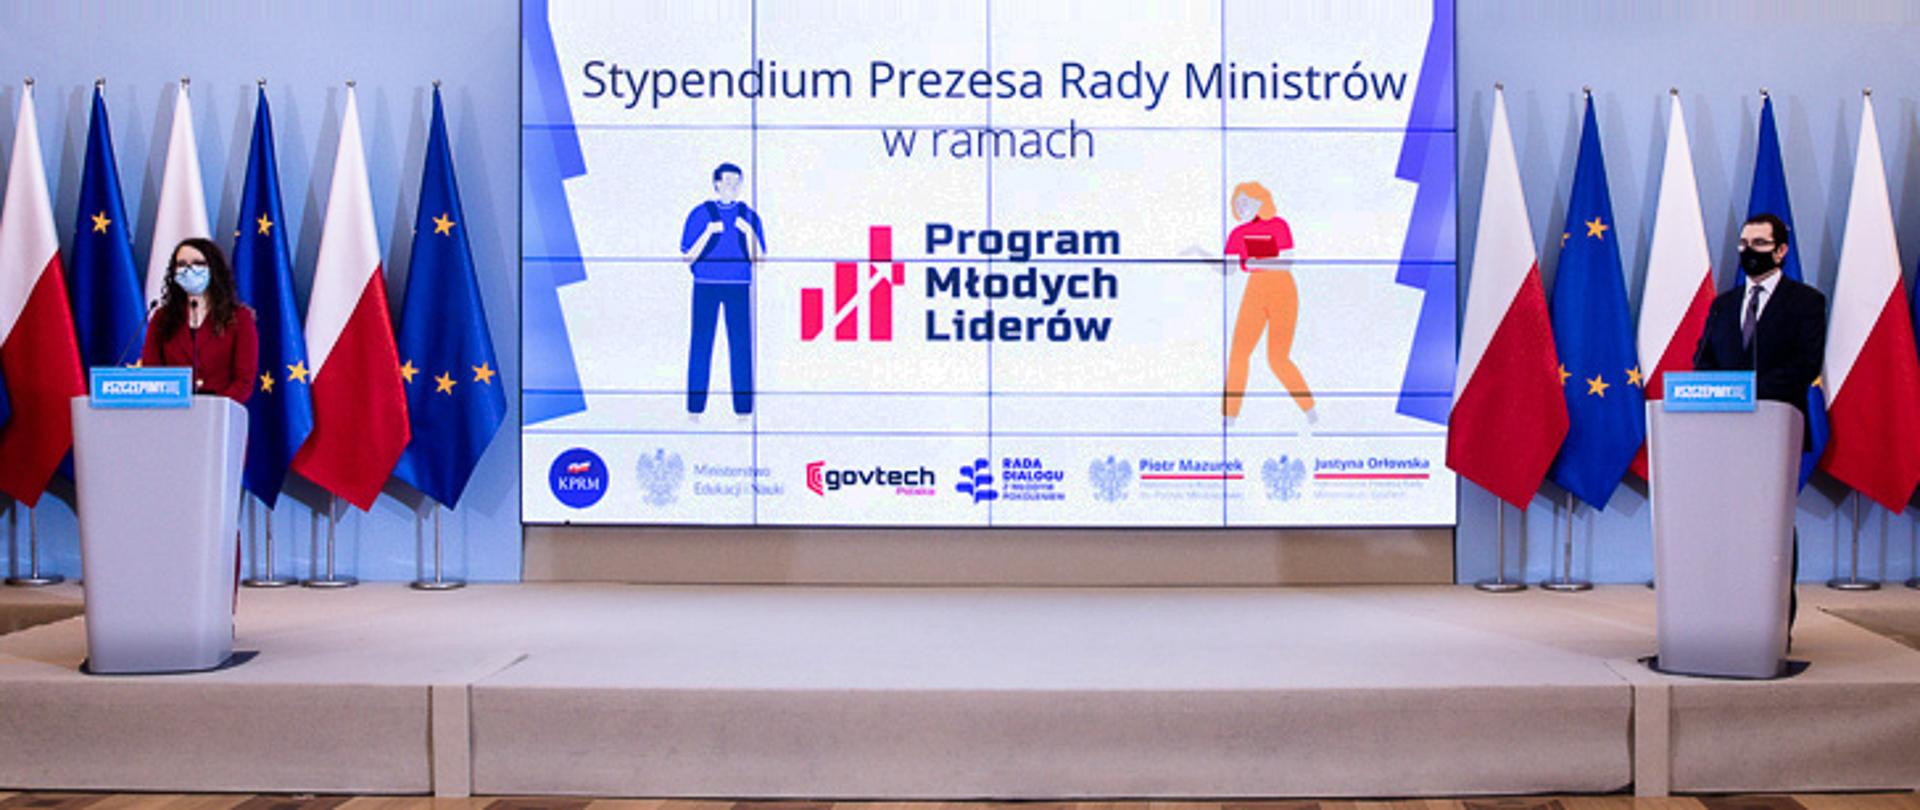 Na konferencji Piotr Mazurek i Justyna Orłowska ogłosili, że młodzi zdecydują o reformie Stypendium Prezesa Rady Ministrów